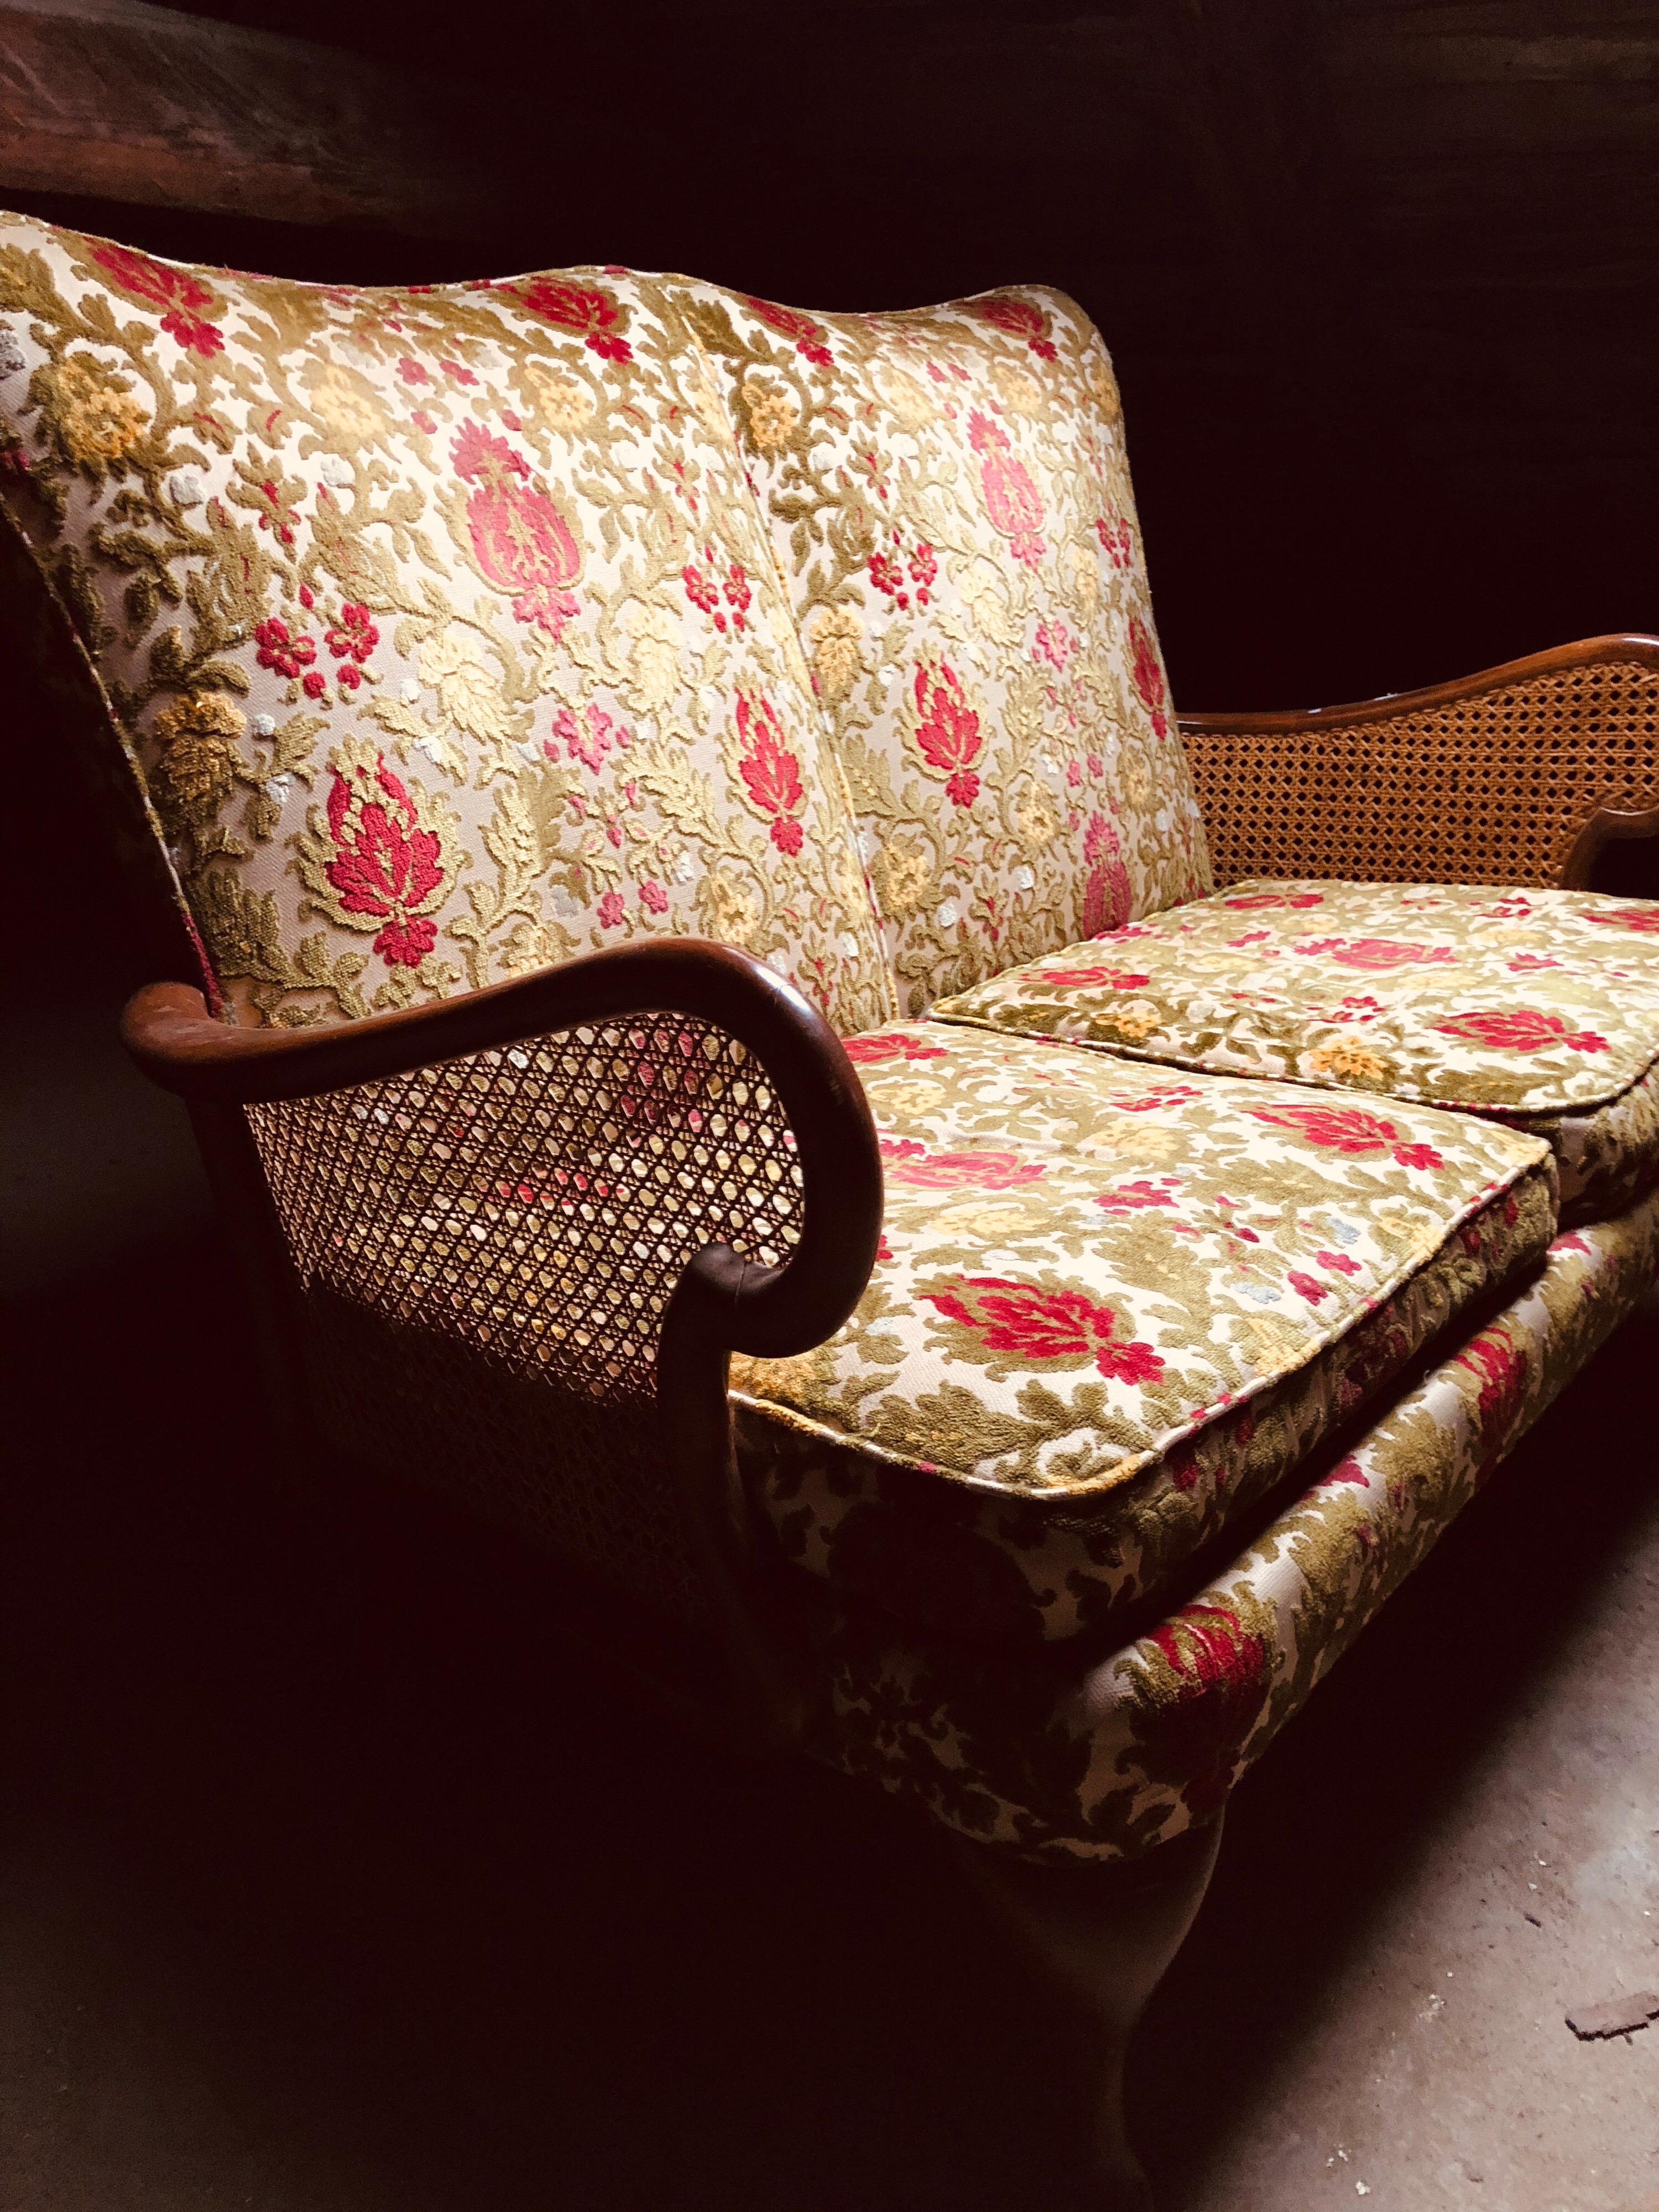 Canapé français à deux places en acajou avec accoudoirs en rotin et tapisserie d'origine.
Il y a deux fauteuils qui pourraient s'accorder parfaitement.
France, datant d'environ 1920.